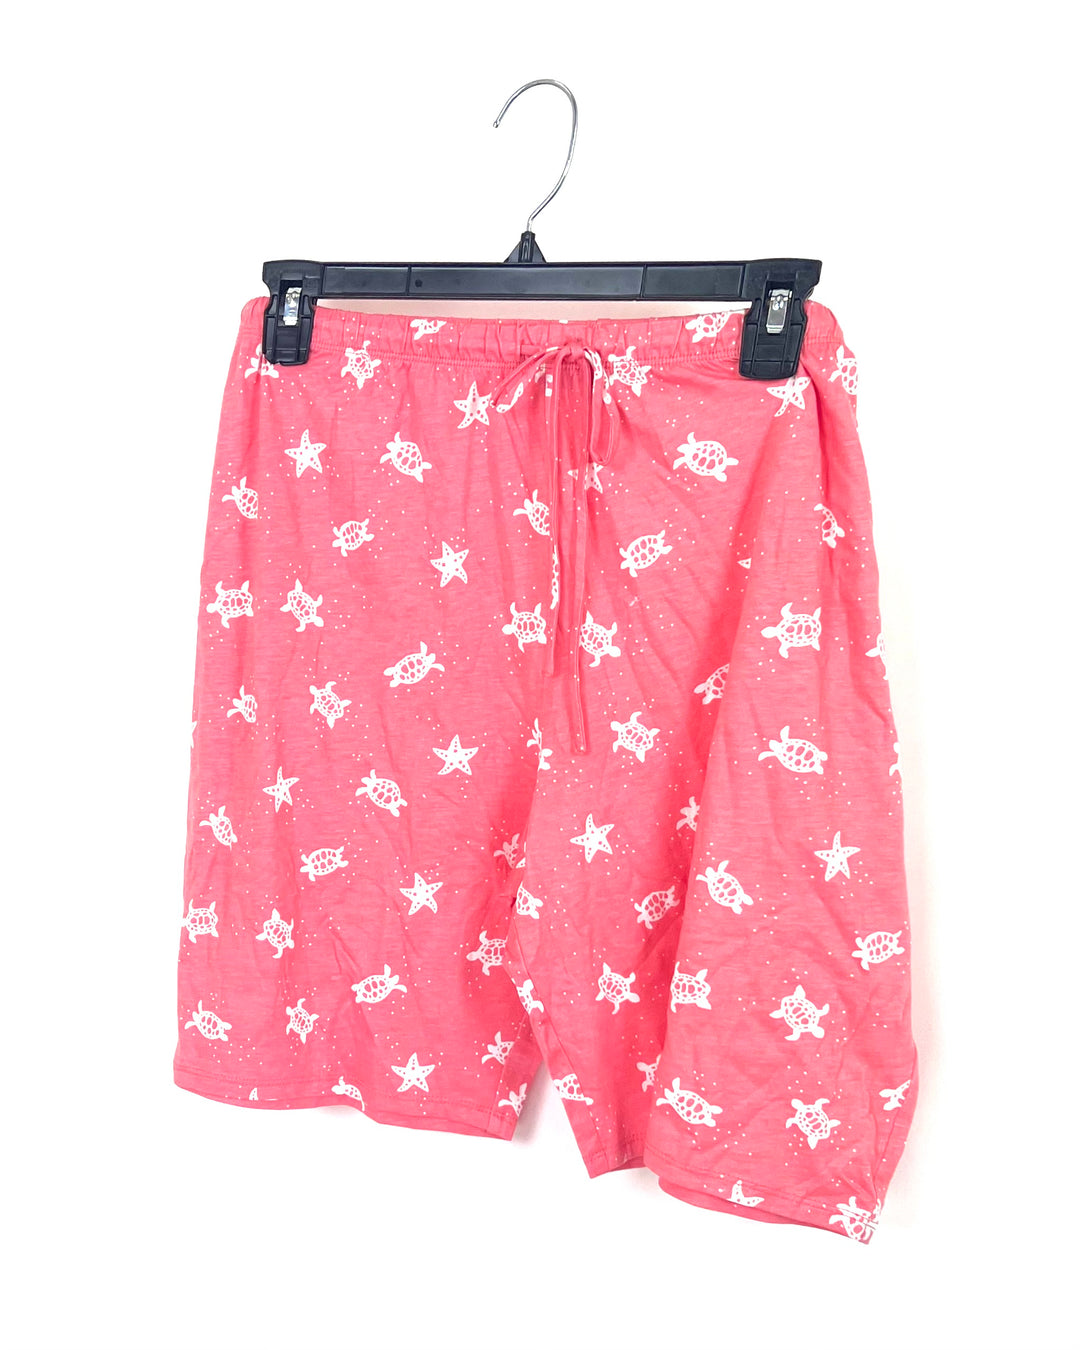 Coral Printed Pajama Set - 1X